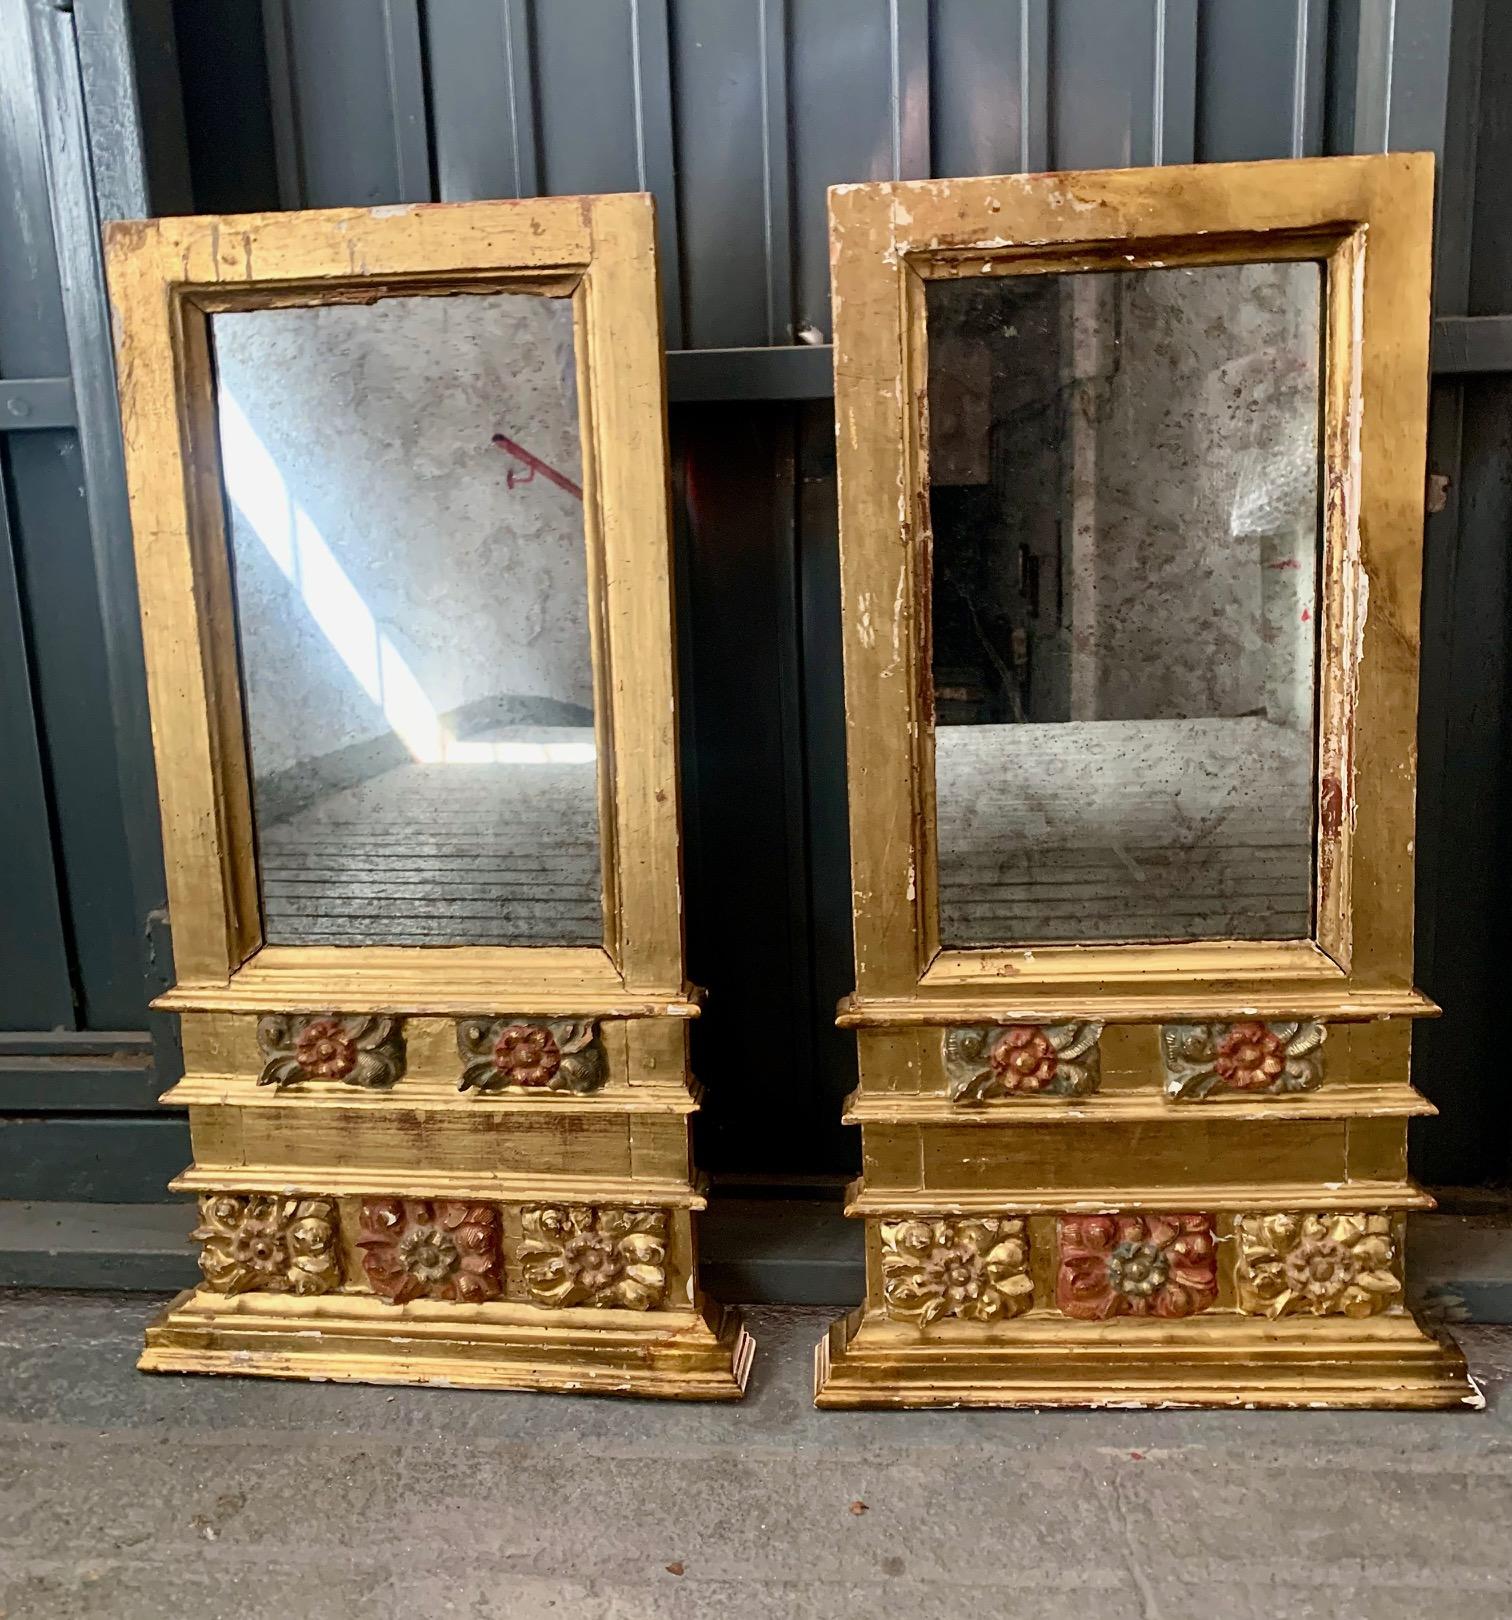 Paire de miroirs baroques espagnols, du XVIIIe siècle, en bois doré et polychrome, dans la partie inférieure en bois sculpté à la main avec des motifs végétaux, en or, vert et rouge. L'un des miroirs présente quelques marques correspondant à leur